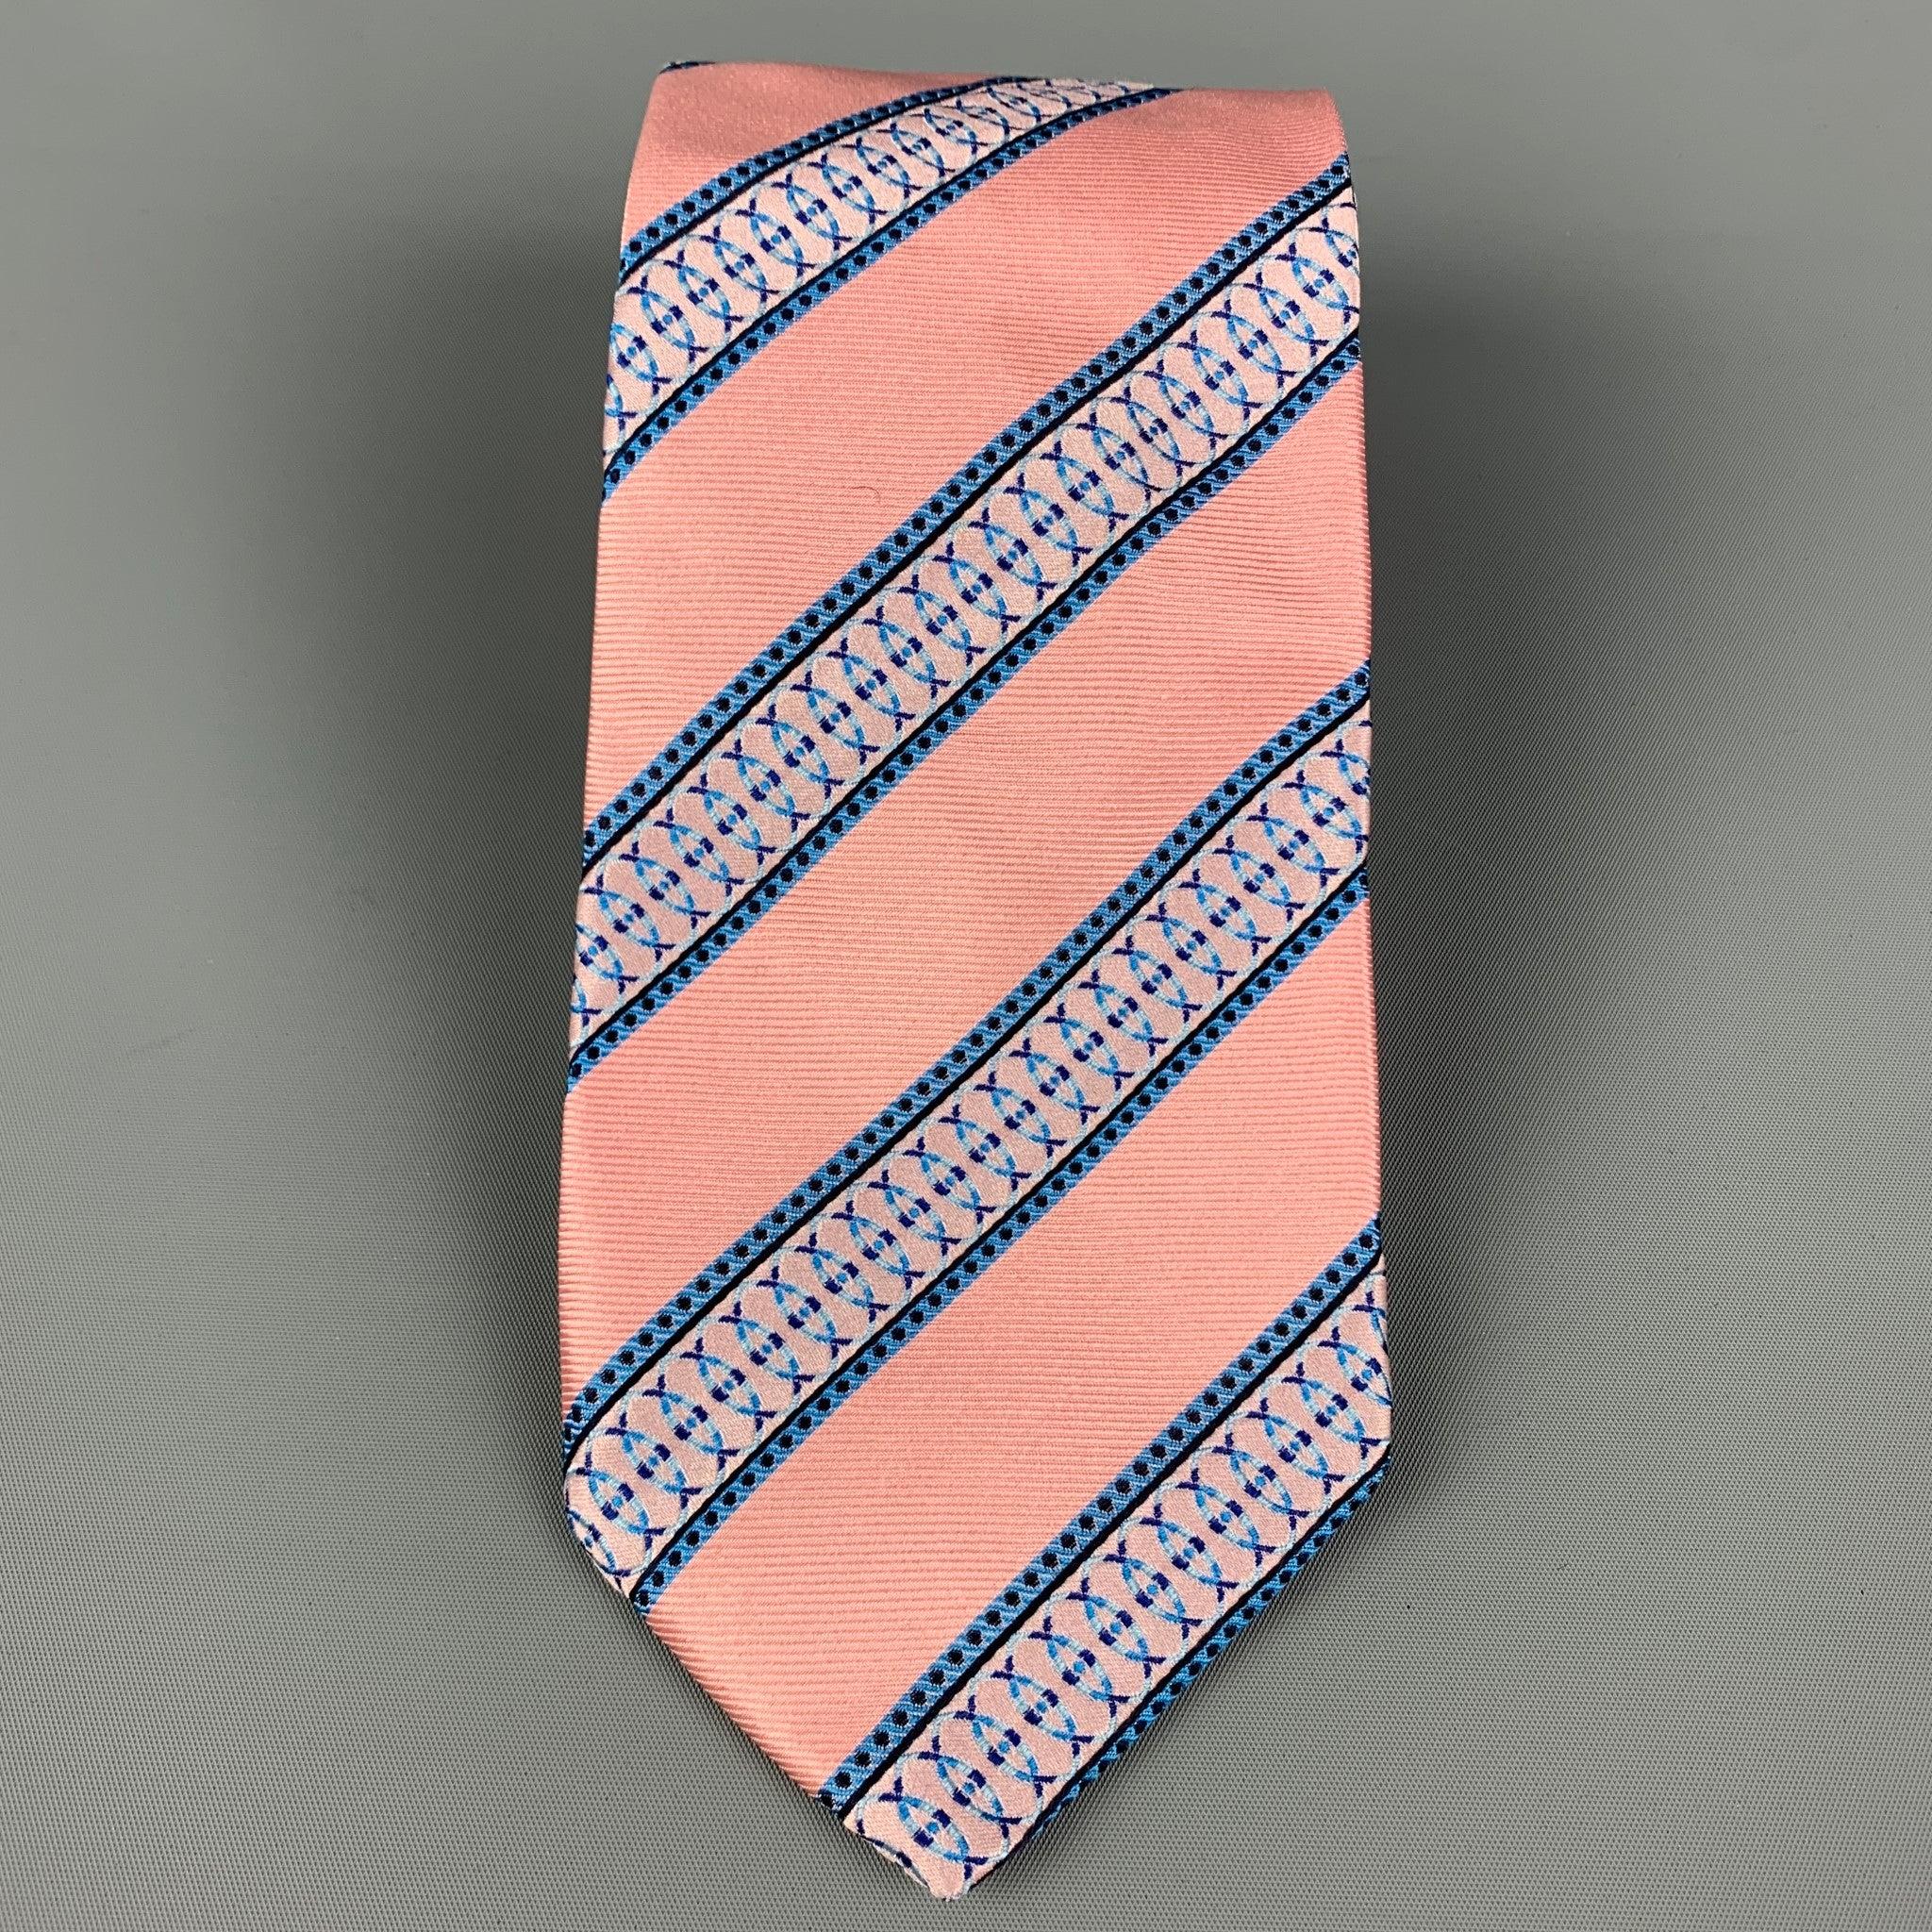 PAUL SMITH
La cravate est en soie rose et bleue avec un imprimé à rayures. Très bon état d'origine. 

Mesures : 
  Largeur :
3.5 pouces  Longueur : 60 pouces 
  
  
 
Référence : 120057
Catégorie : Cravate
Plus de détails
    
Marque :  PAUL